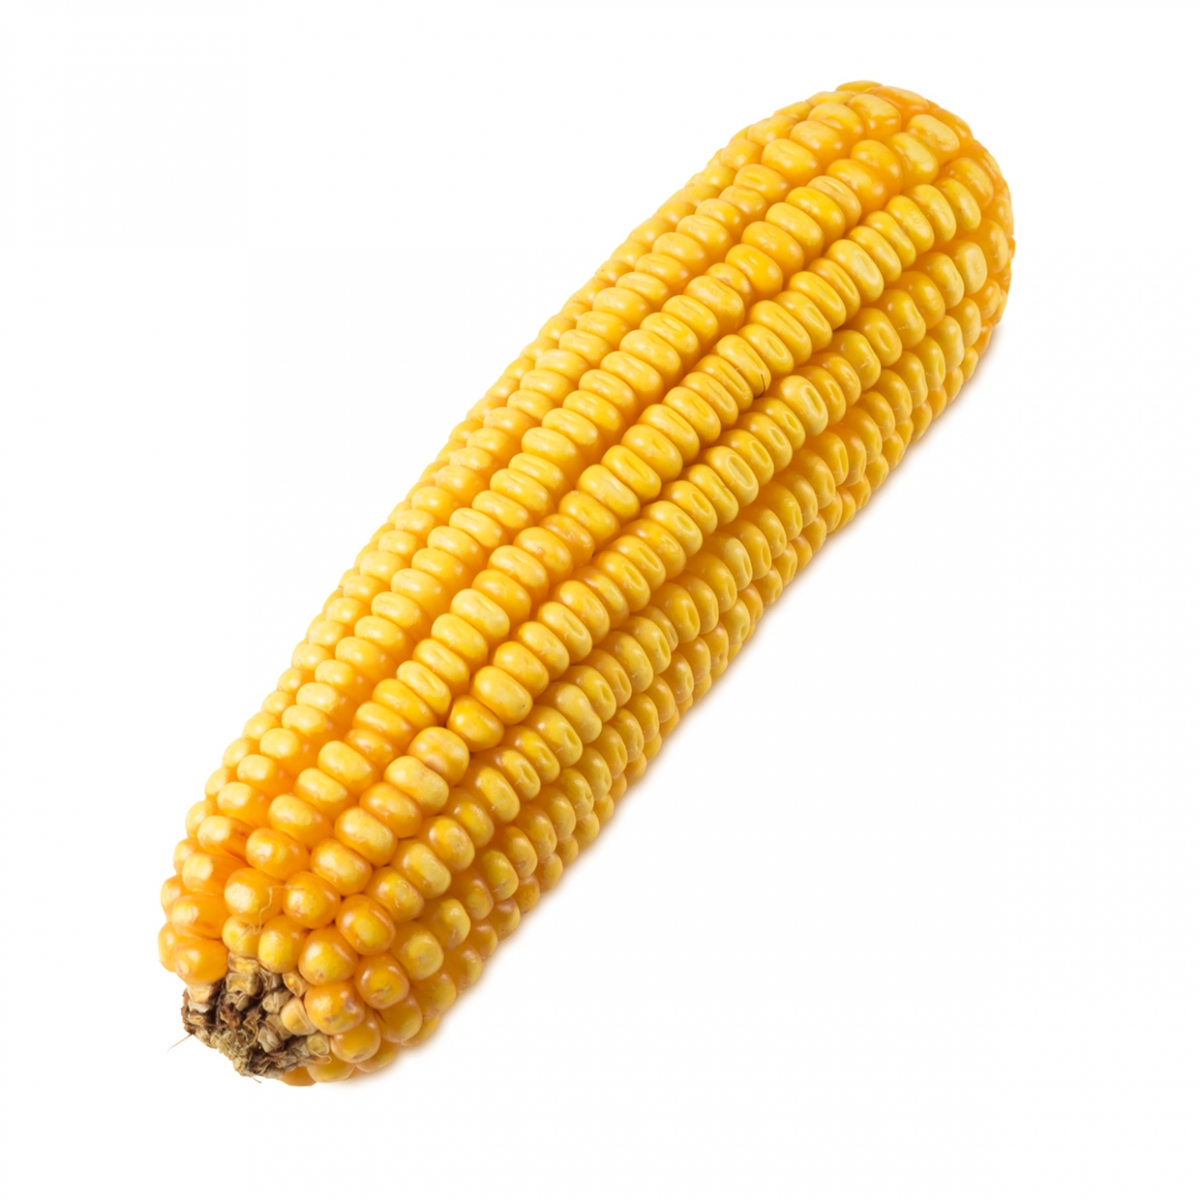 Imagen en la que se ve una mazorca de maíz